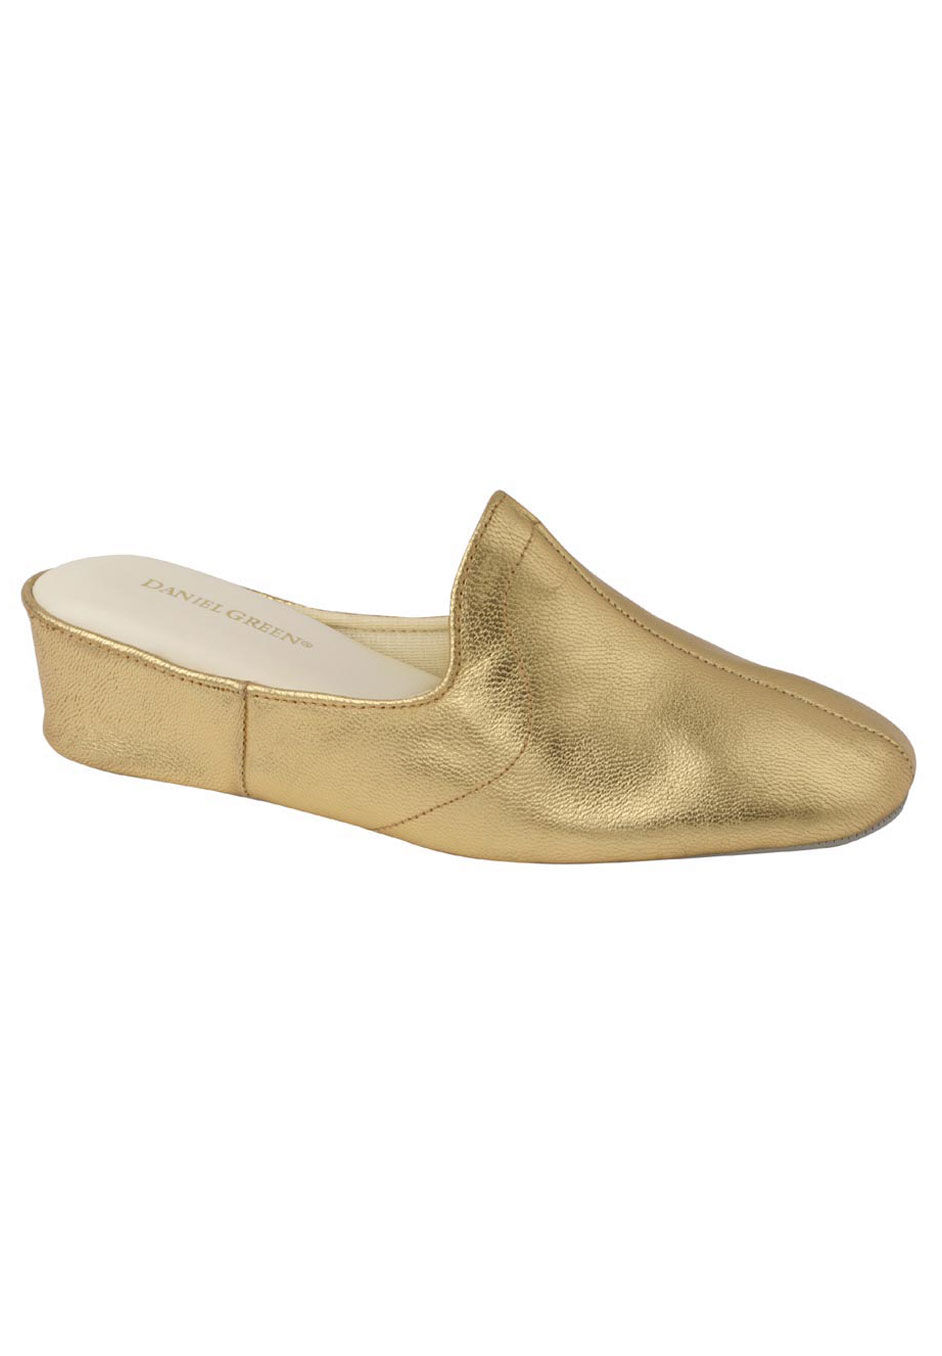 Wide Width Women's Glamour Slipper by Daniel Green in Gold (Size 10 W)